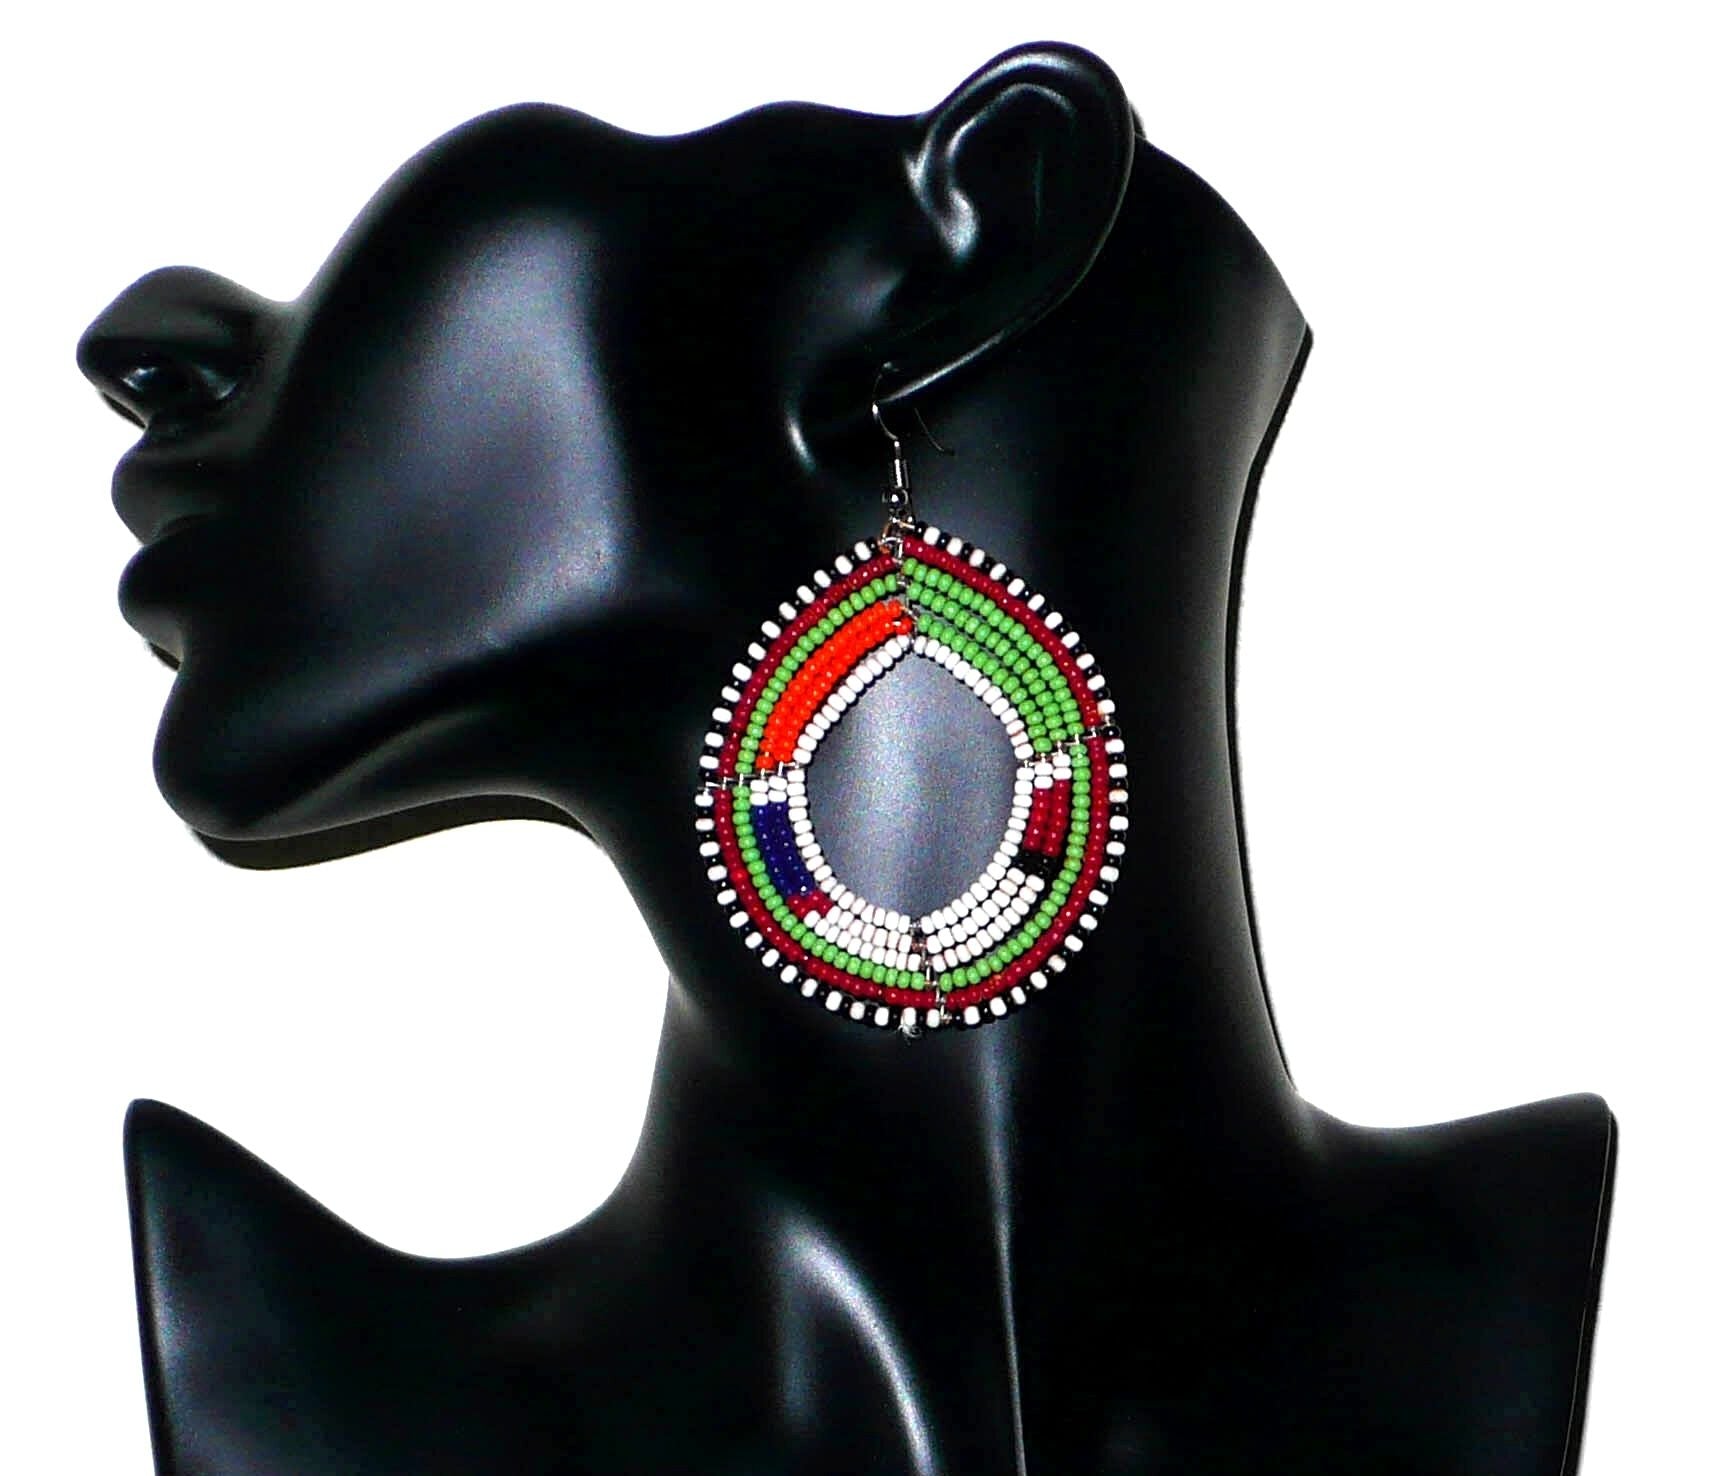 Longues boucles d'oreilles africaines Massai faites de perles de rocaille vertes, blanches, orange, rouges, bleu foncé et noires fixées sur six rangées de fils de fer montés en cercles. Elles mesurent 8 cm de long et 5,5 cm de larges et se portent avec des crochets en acier inoxydable sur des oreilles percées. Timeless Fineries